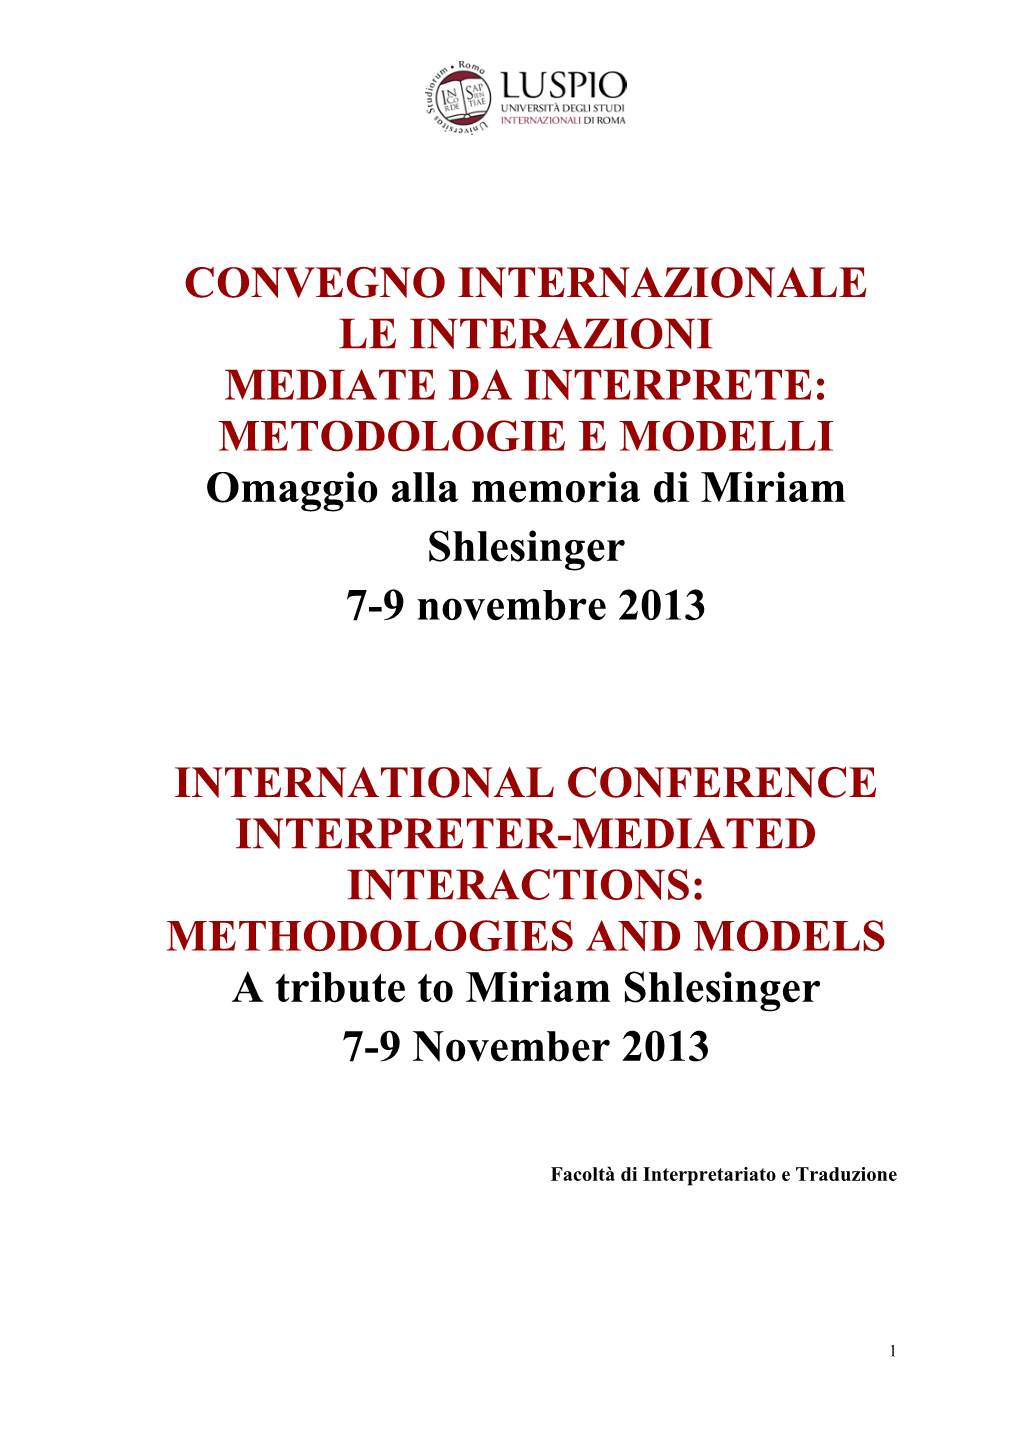 CONVEGNO INTERNAZIONALE LE INTERAZIONI MEDIATE DA INTERPRETE: METODOLOGIE E MODELLI Omaggio Alla Memoria Di Miriam Shlesinger 7-9 Novembre 2013